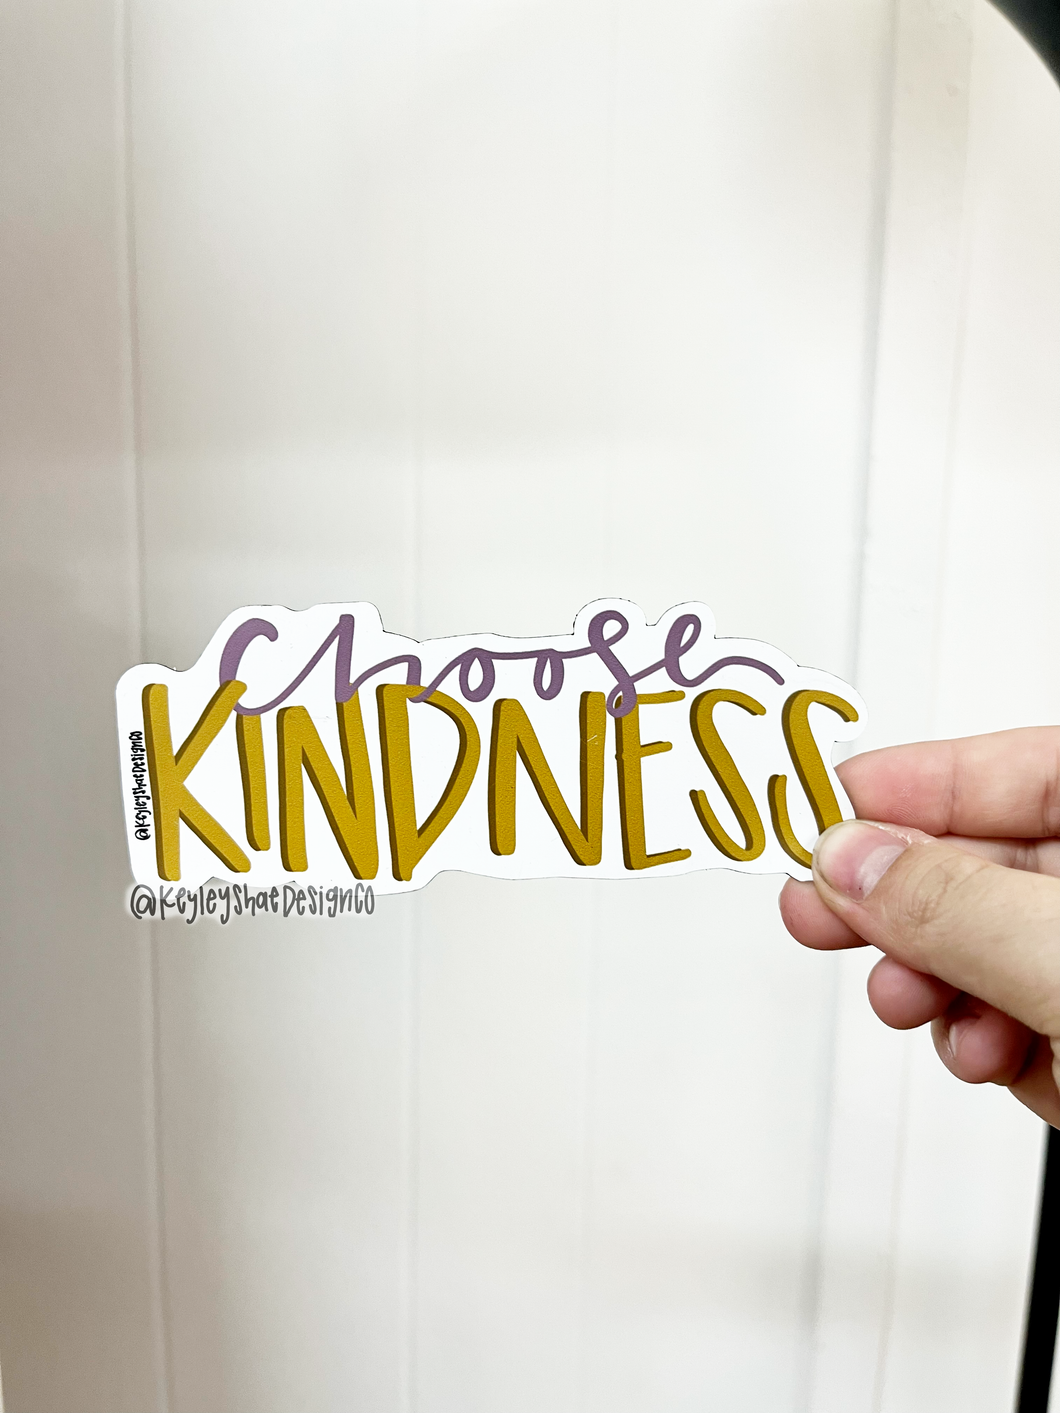 Choose Kindness Magnet